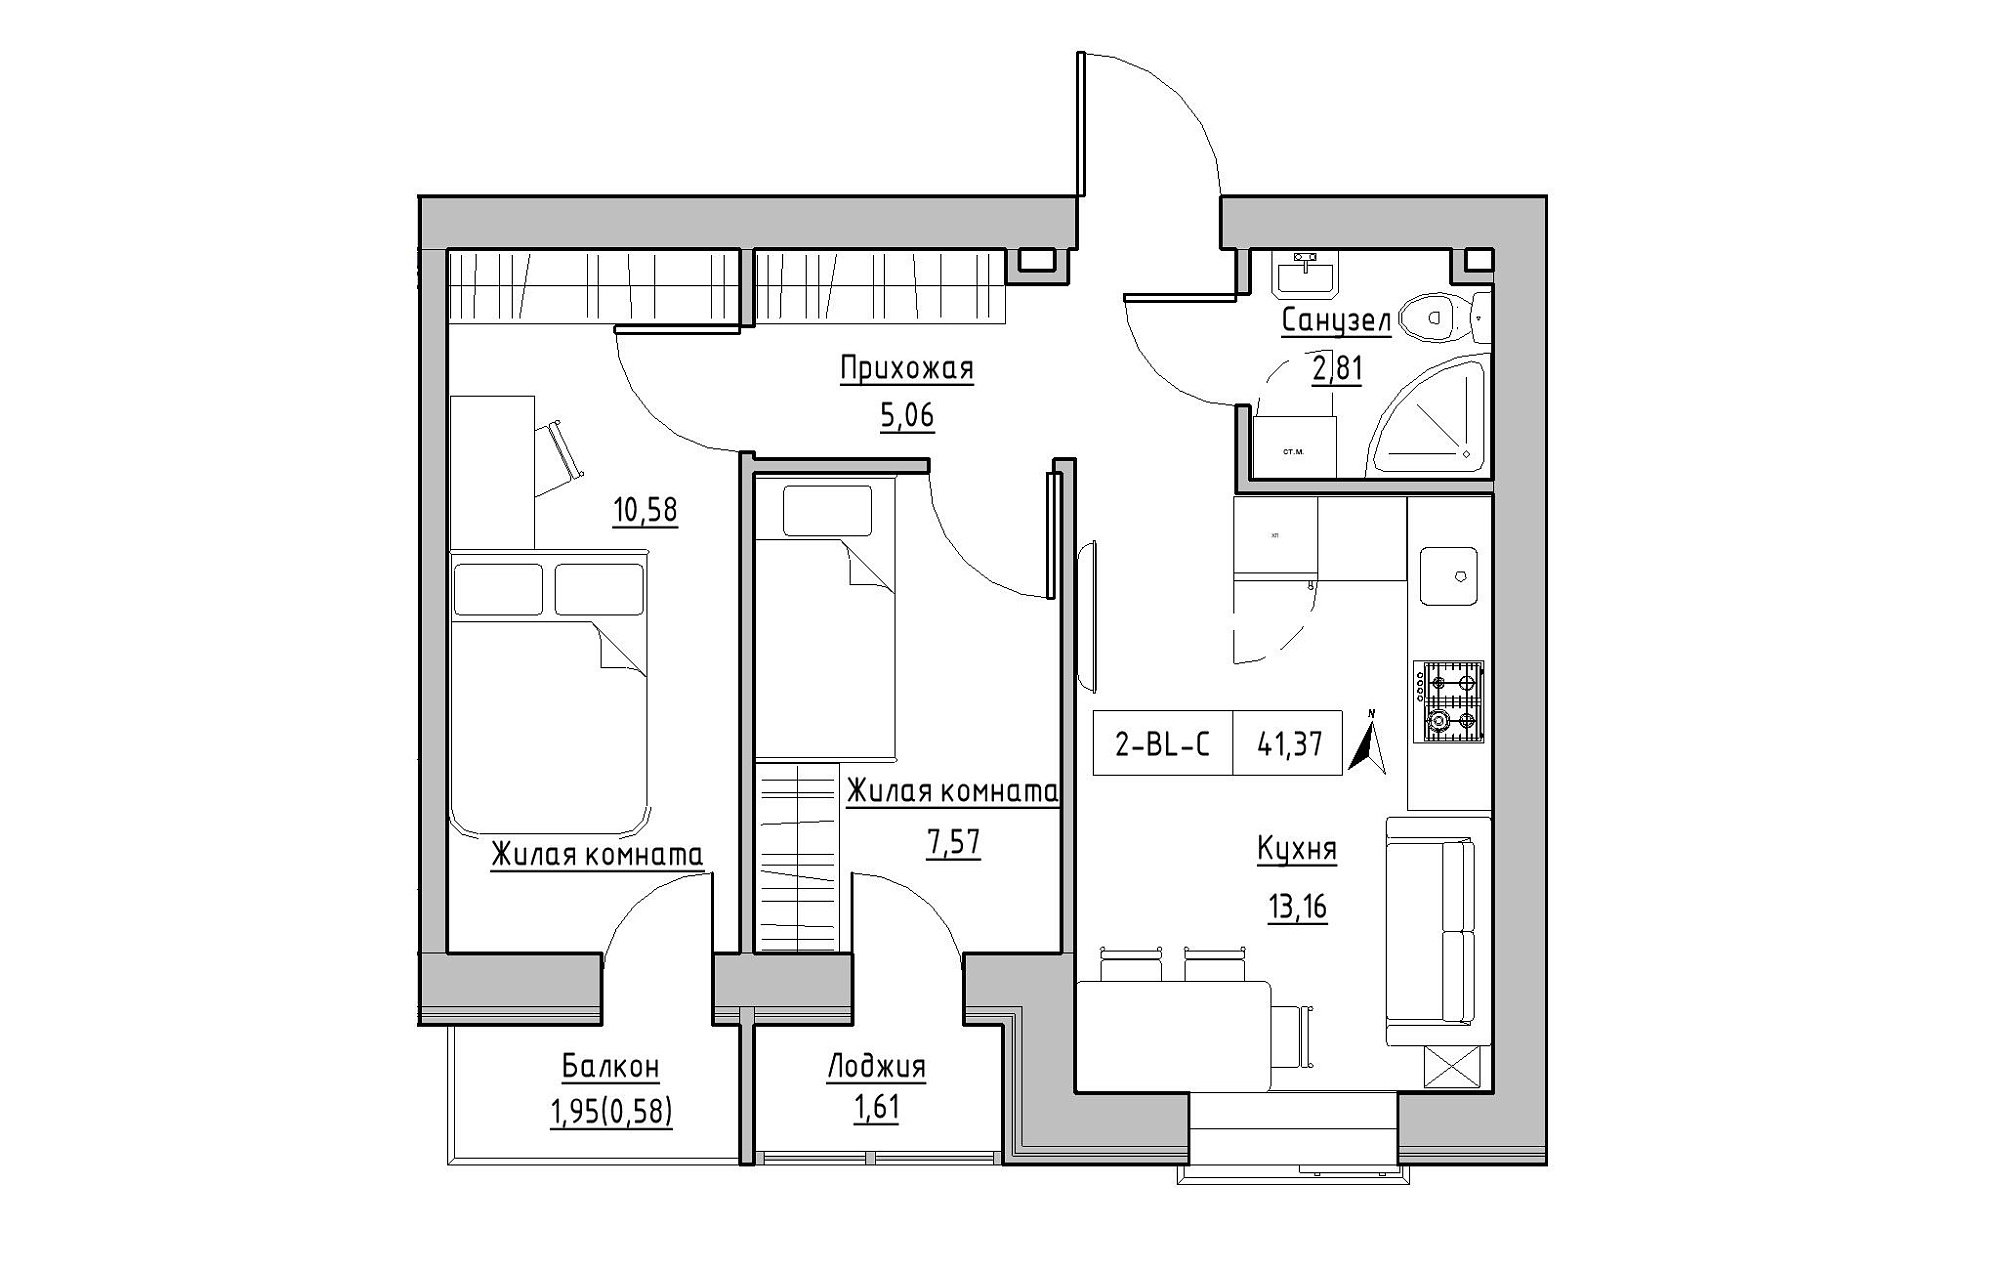 Планування 2-к квартира площею 41.37м2, KS-019-03/0011.